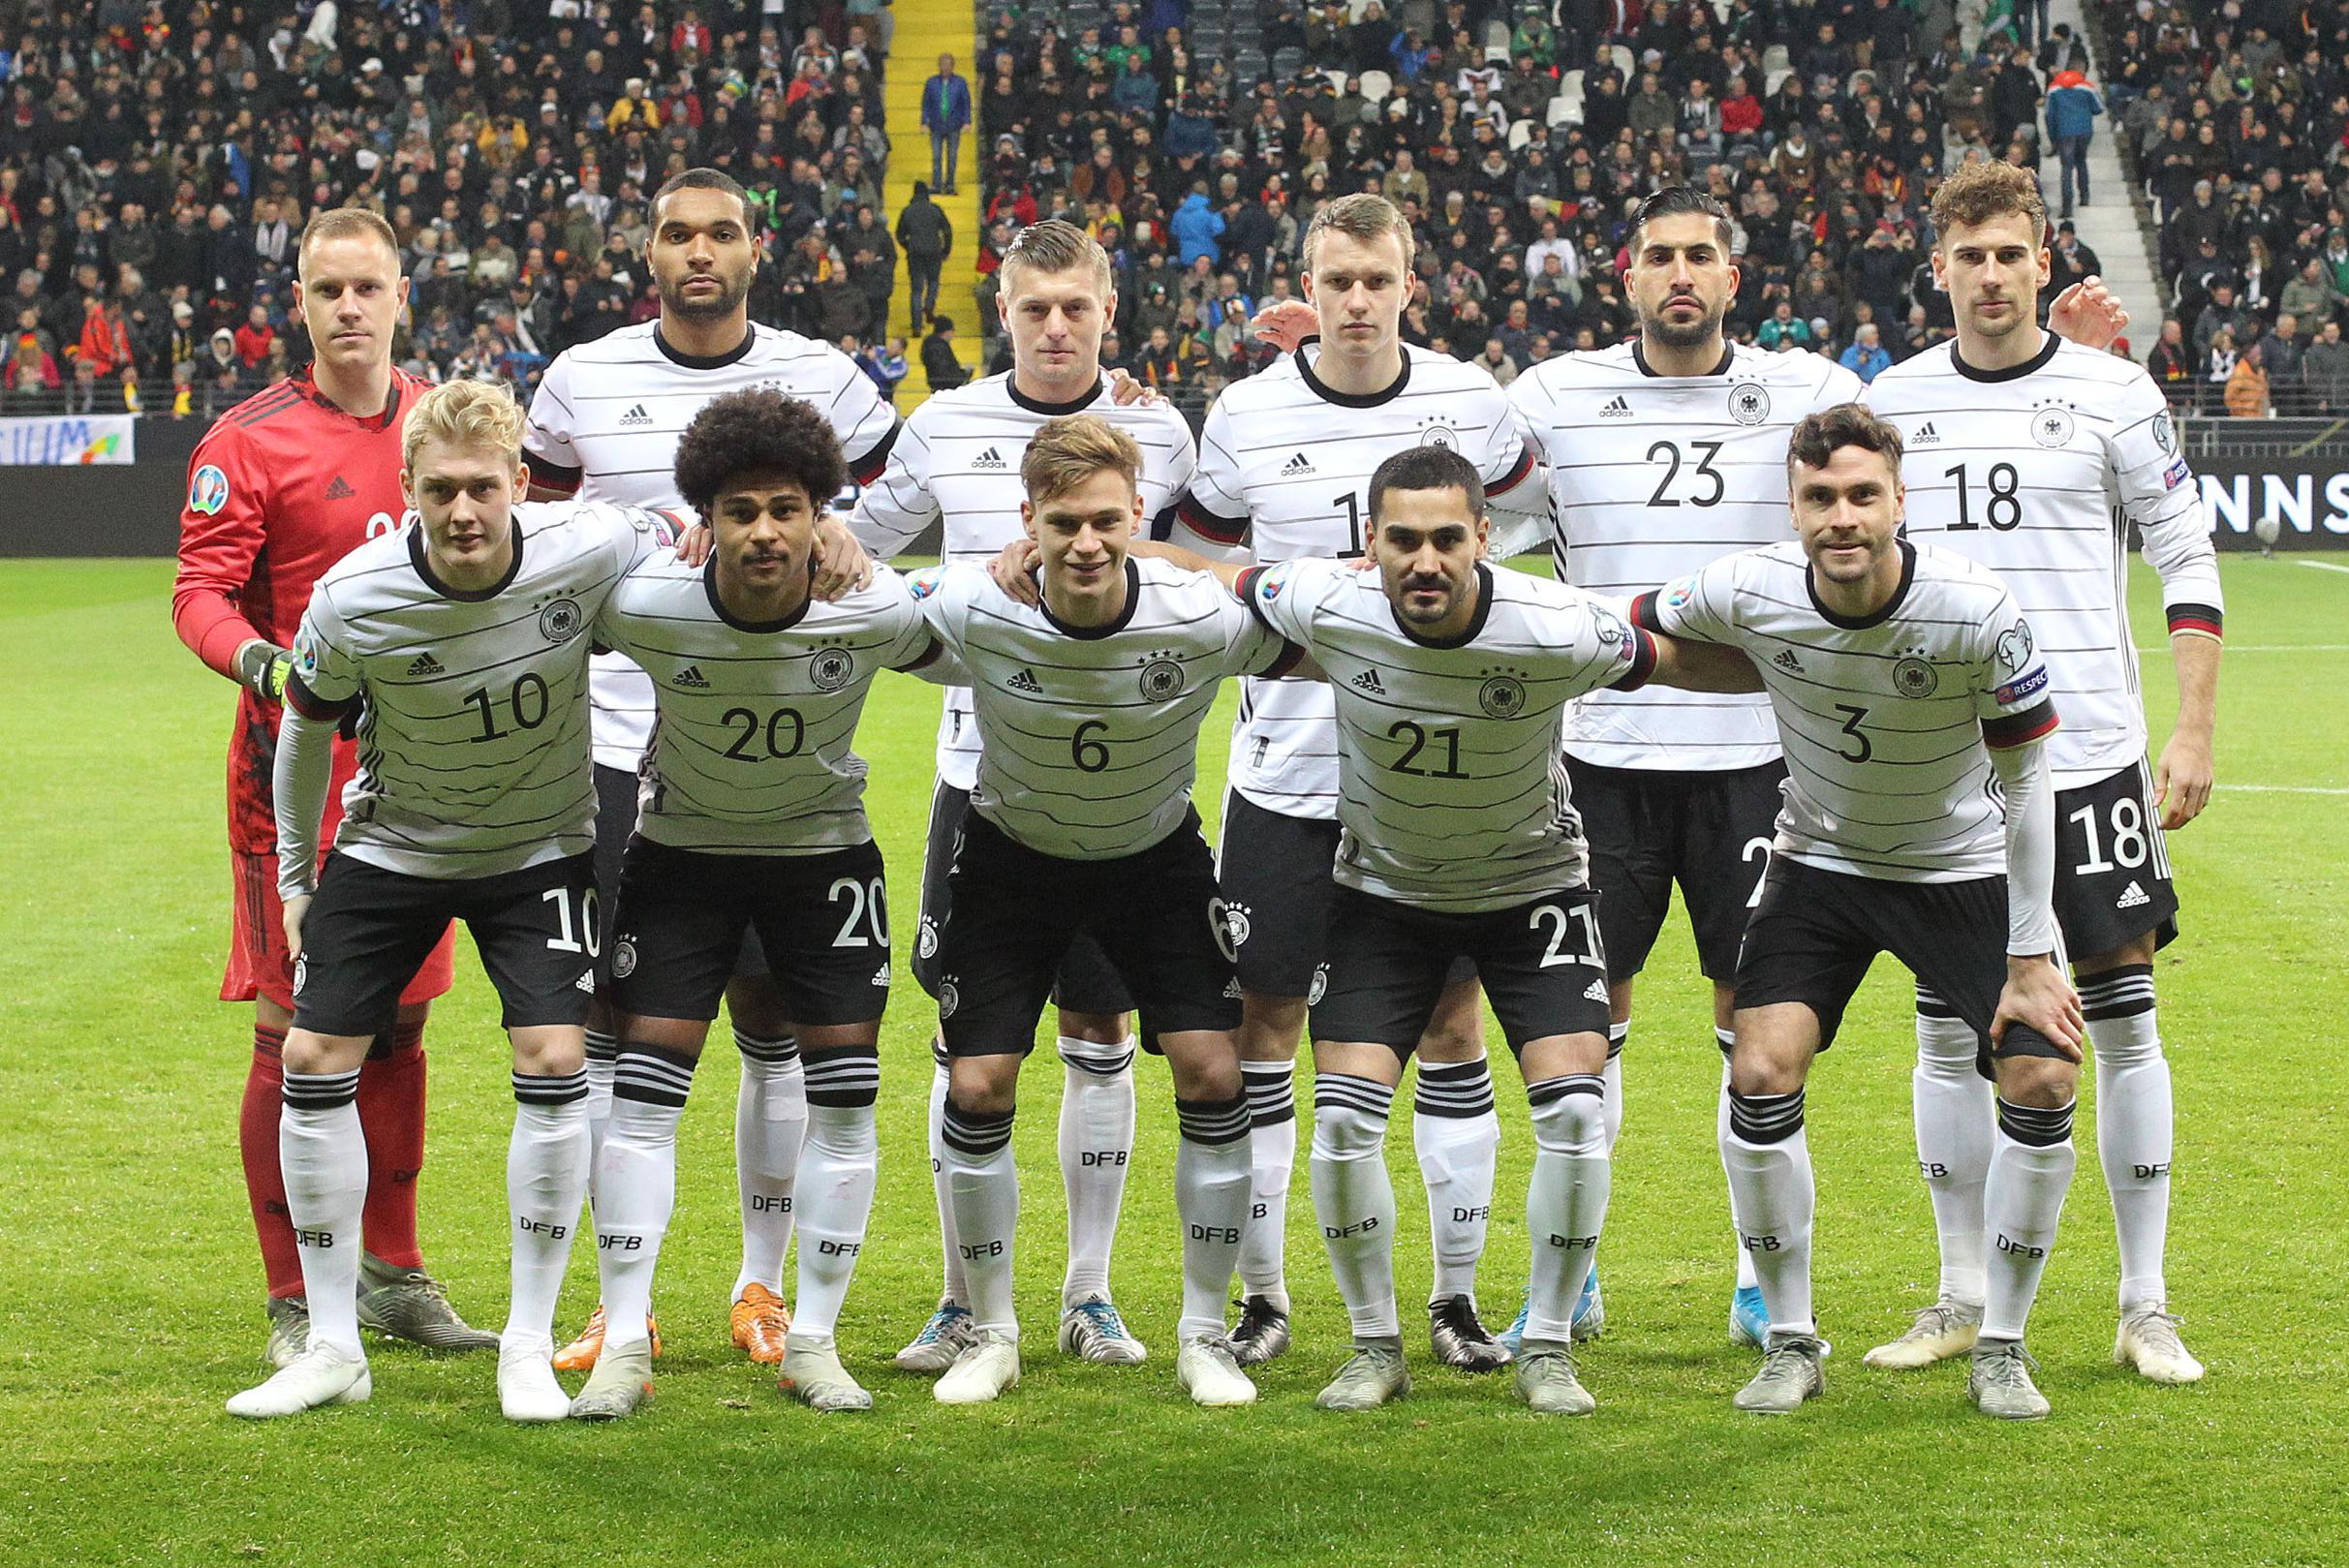 Opvallend: Duitse voetbalbond laat naam 'Die Mannschaft' vallen omdat ze die arrogant vinden | Het Nieuwsblad Mobile